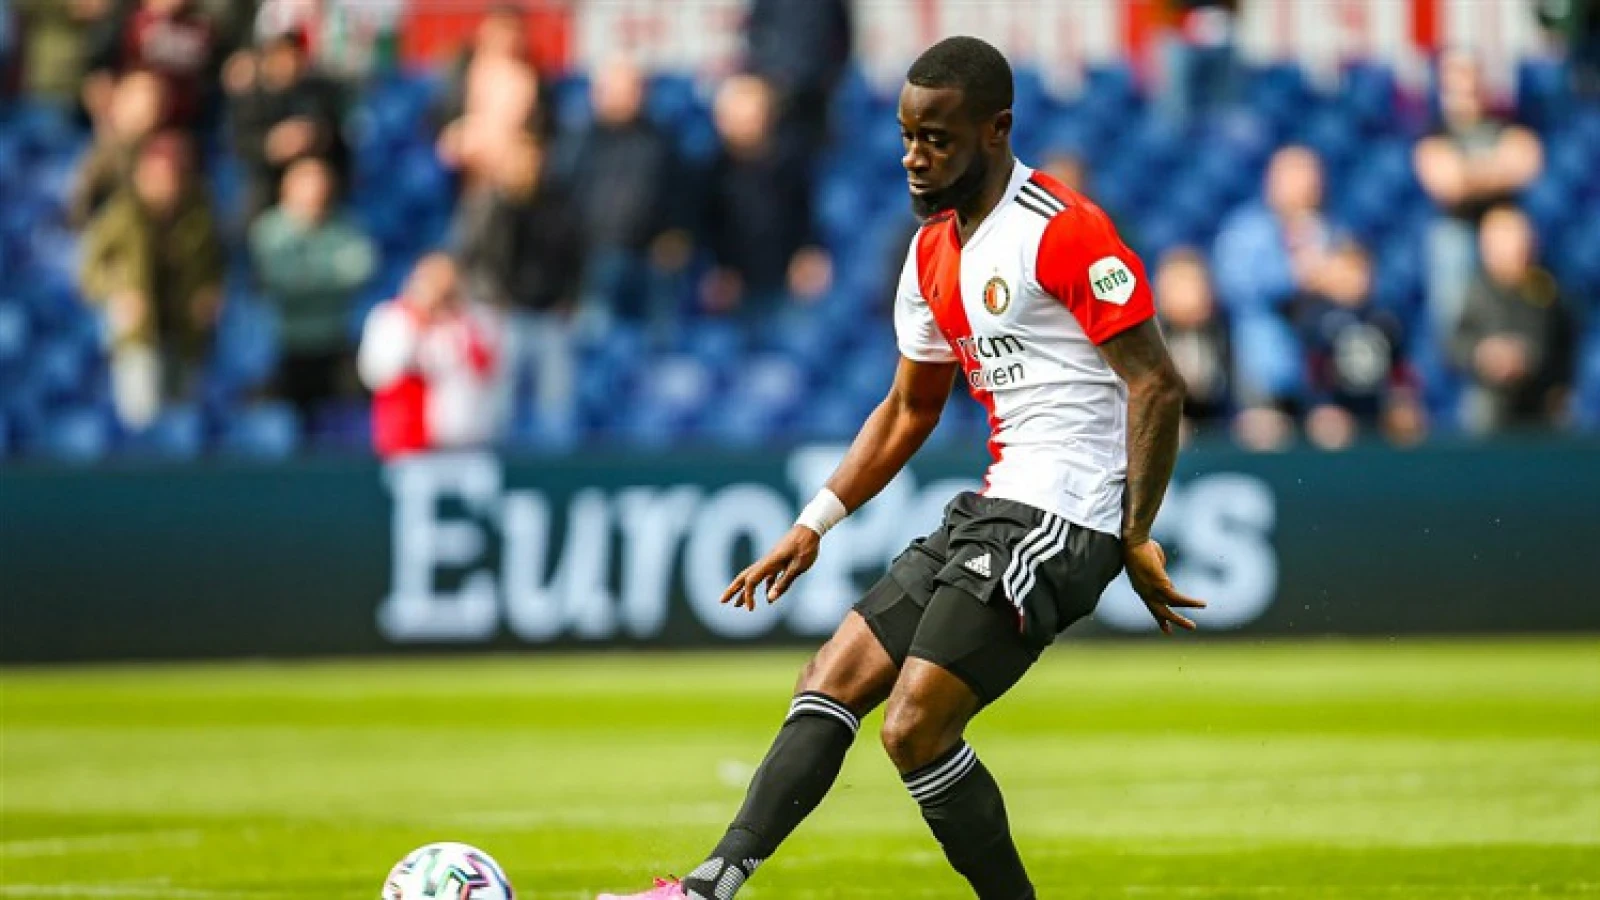 OFFICIEEL | Feyenoord bereikt principeakkoord over contractverlenging Geertruida